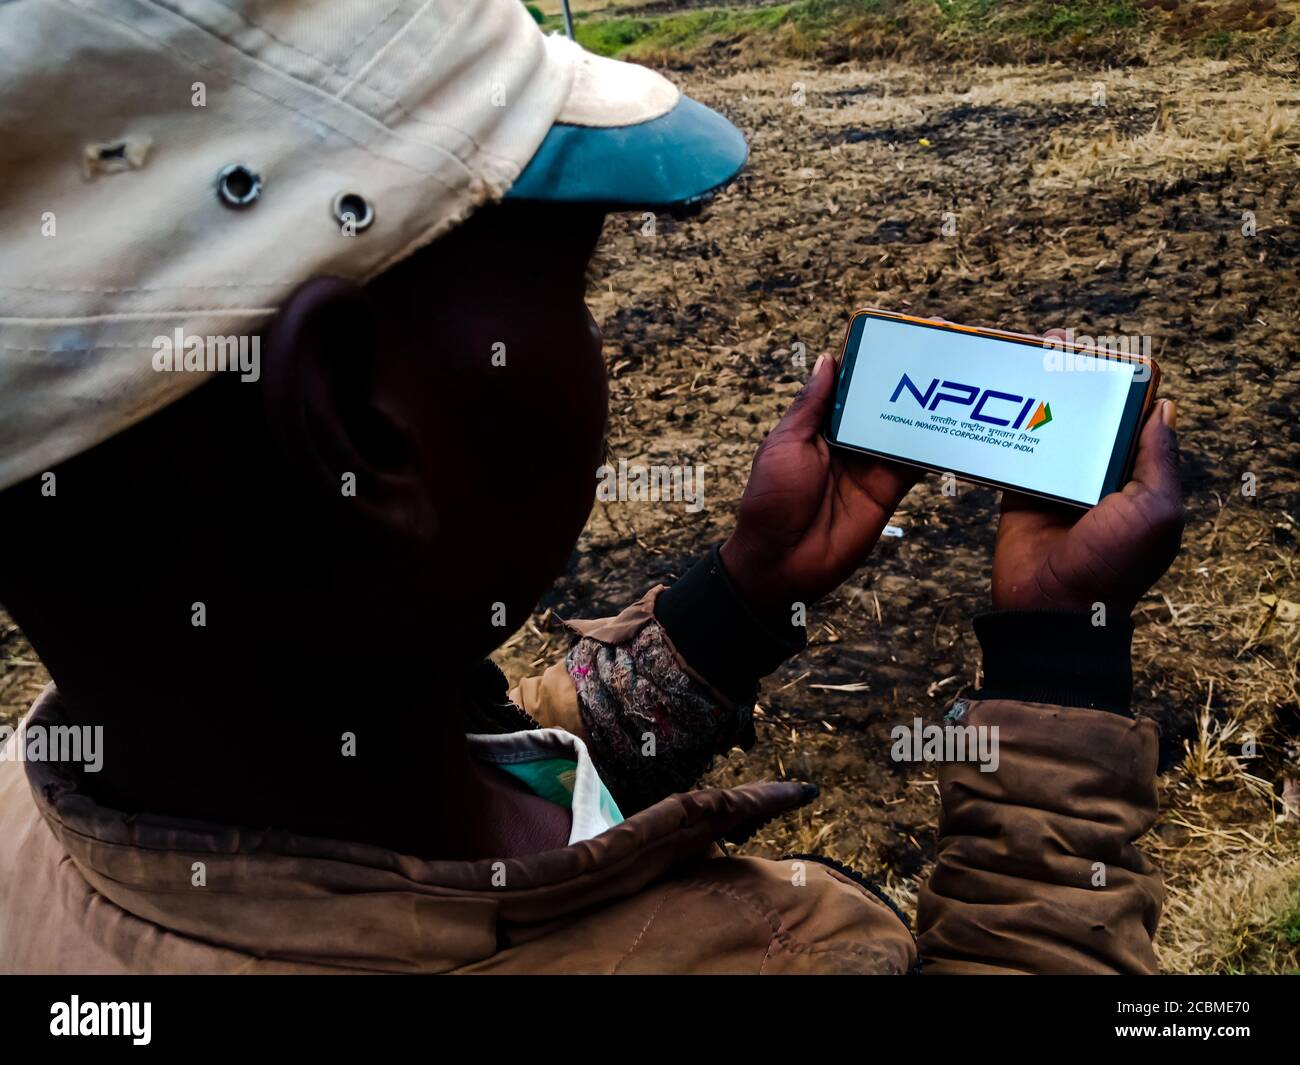 DISTRETTO KATNI, INDIA - 20 DICEMBRE 2019: Il logo NPCI National Payments Corporation of India presentato sullo schermo digitale dello smartphone dal villaggio indiano Foto Stock